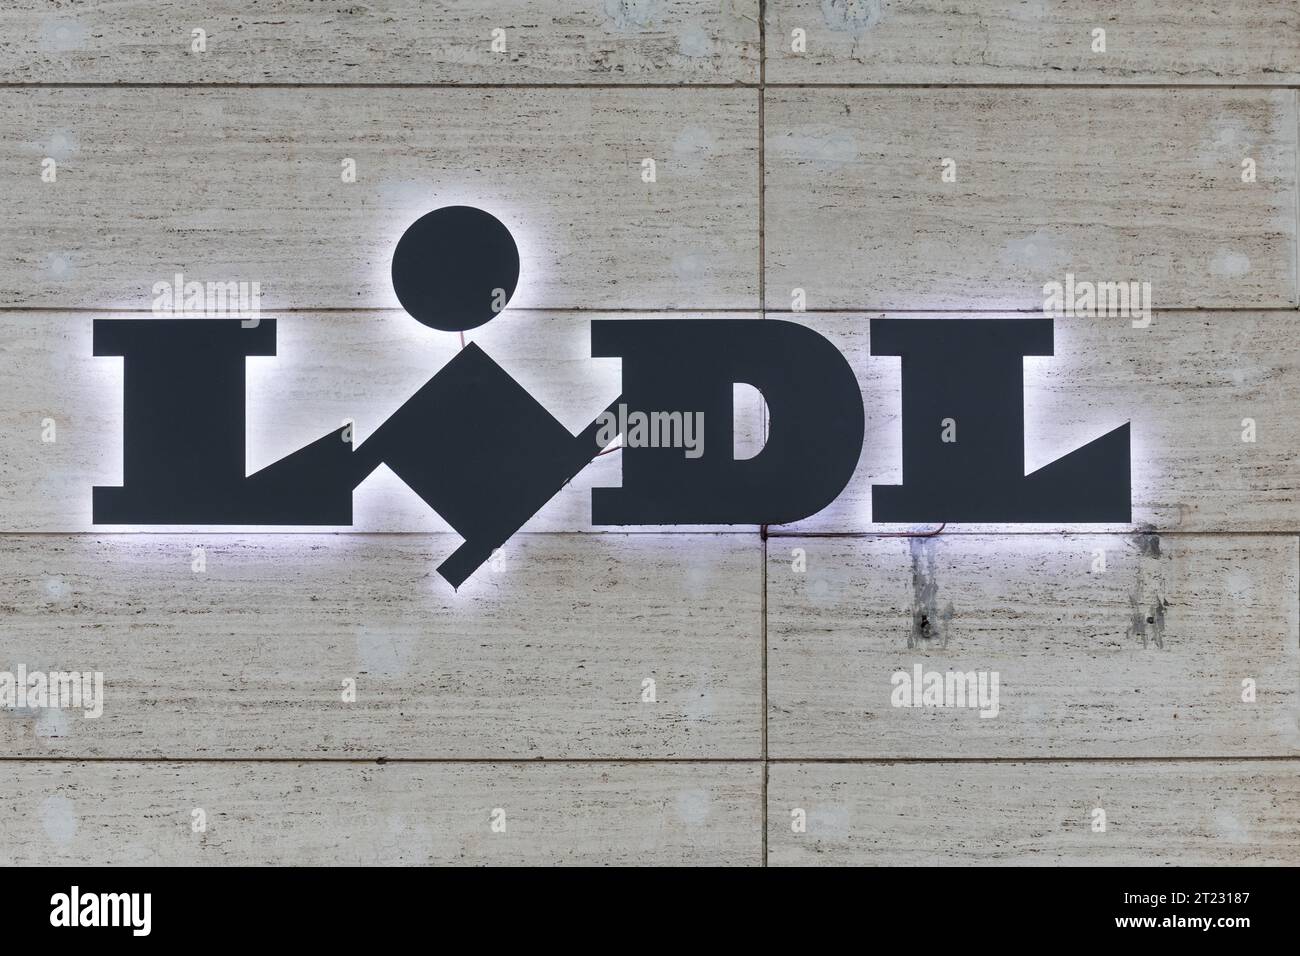 Lidl supermarket sign, Lidl logo Stock Photo